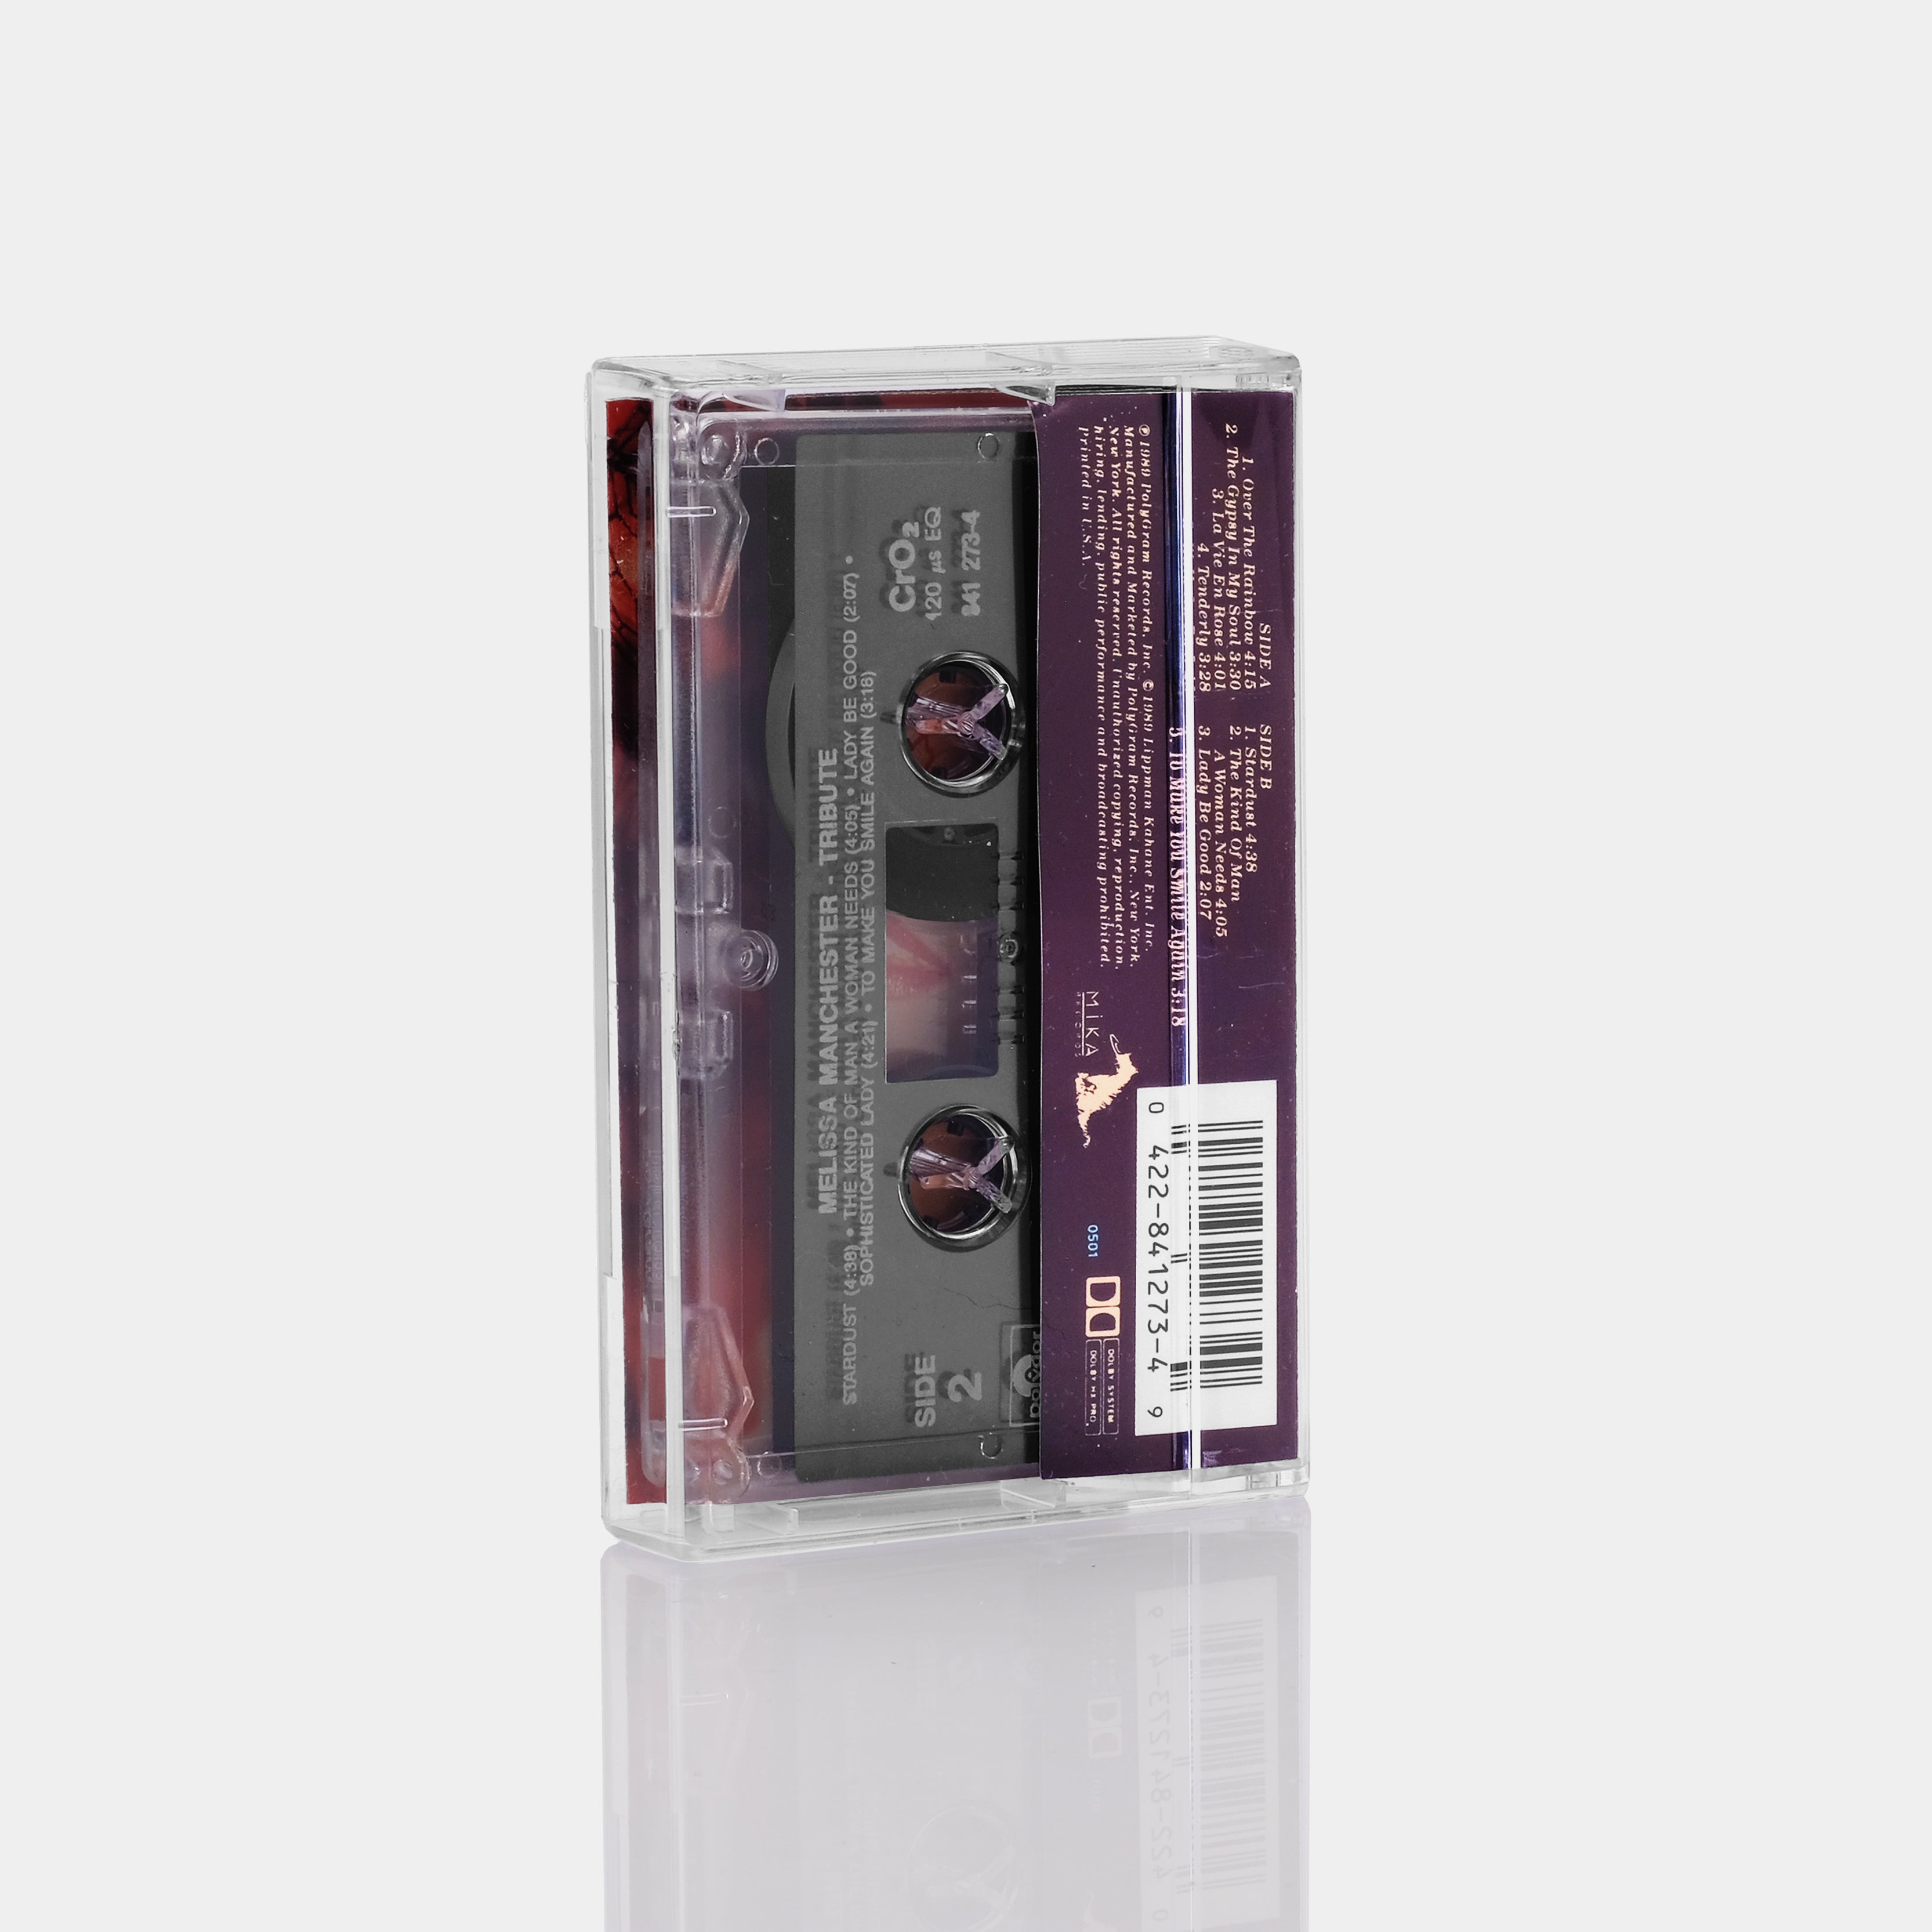 Melissa Manchester - Tribute Cassette Tape